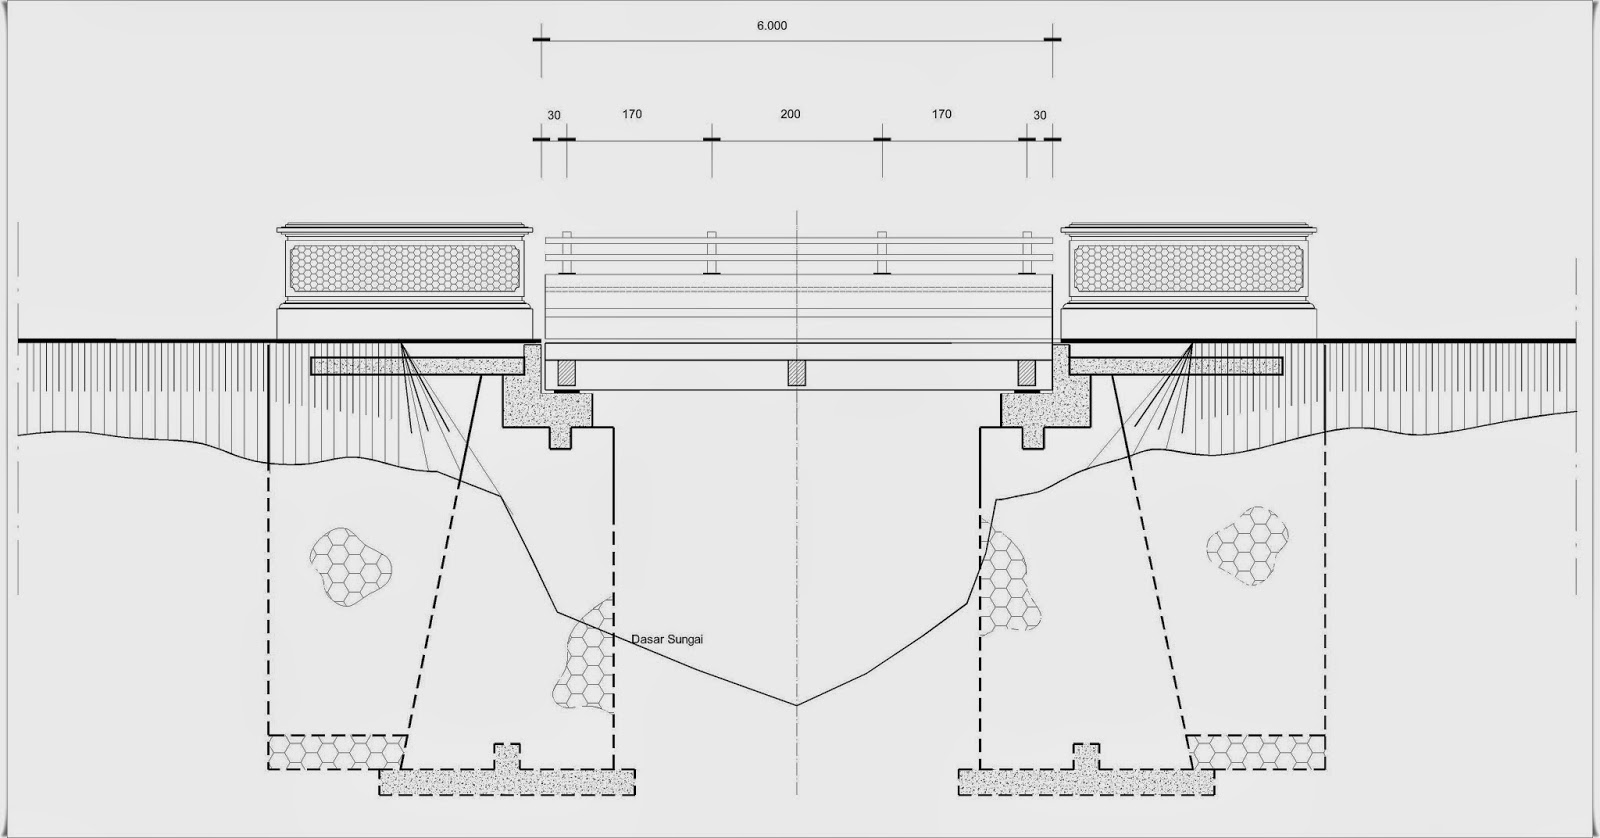 Gambar Jembatan bentang 6 meter - Home Design and Ideas